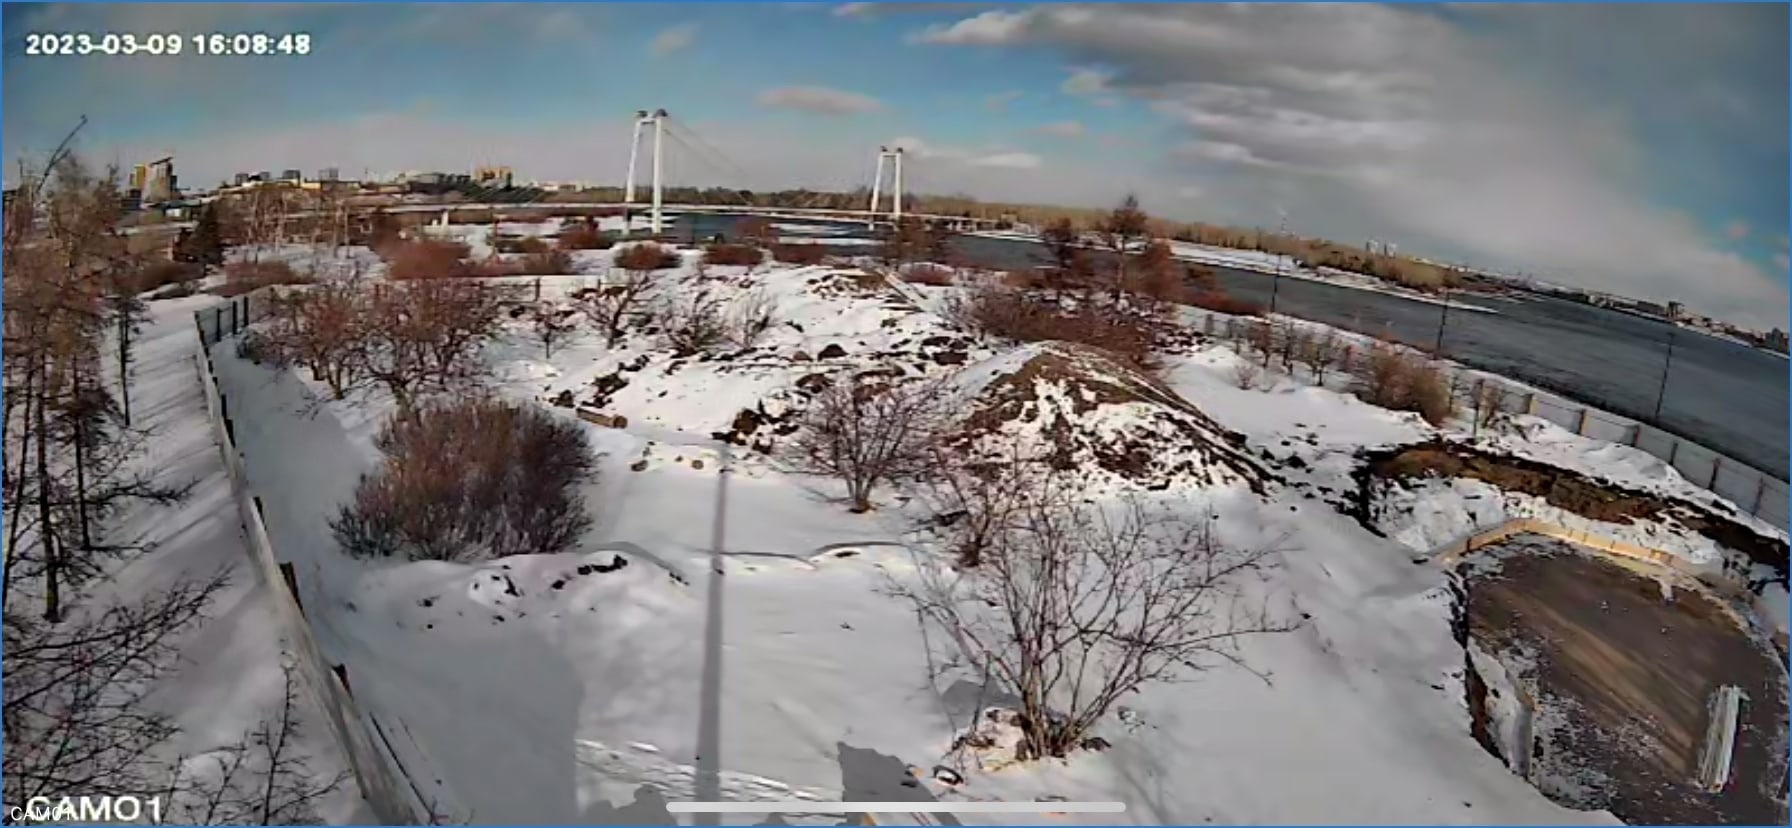 Еще один кадр с камер видеонаблюдения на месте стройки